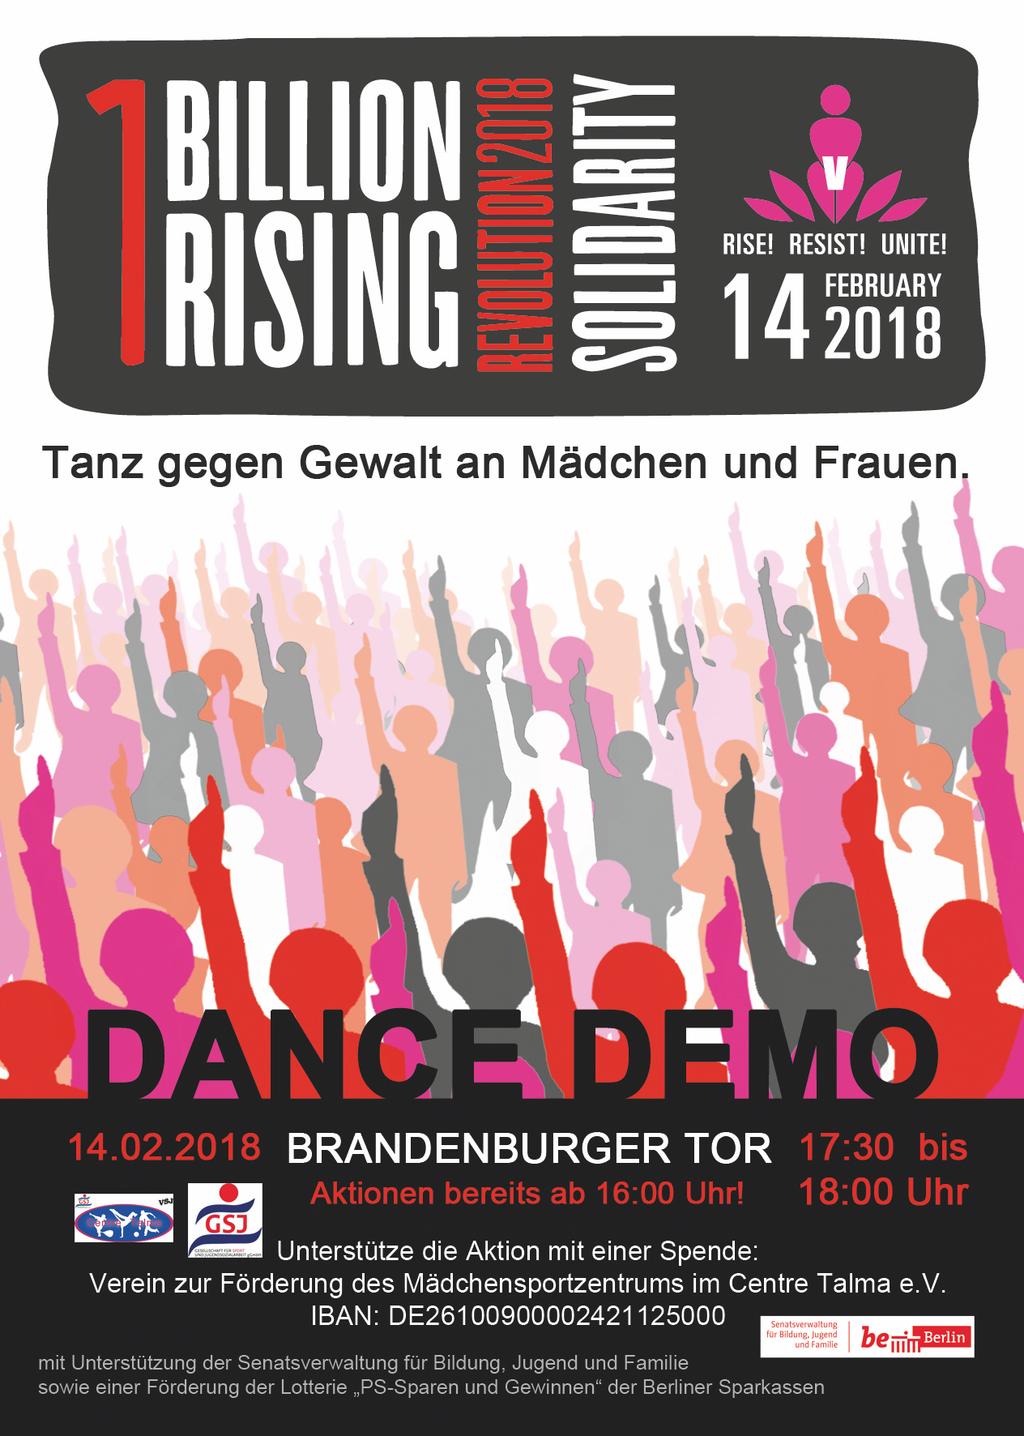 One Billion Rising heißt: sich zu erheben mit einer Milliarde Menschen gegen Gewalt an Mädchen und Frauen Dies soll sie ermächtigen aus der Opferrolle durch und mit dem Tanz herauszutreten und mit